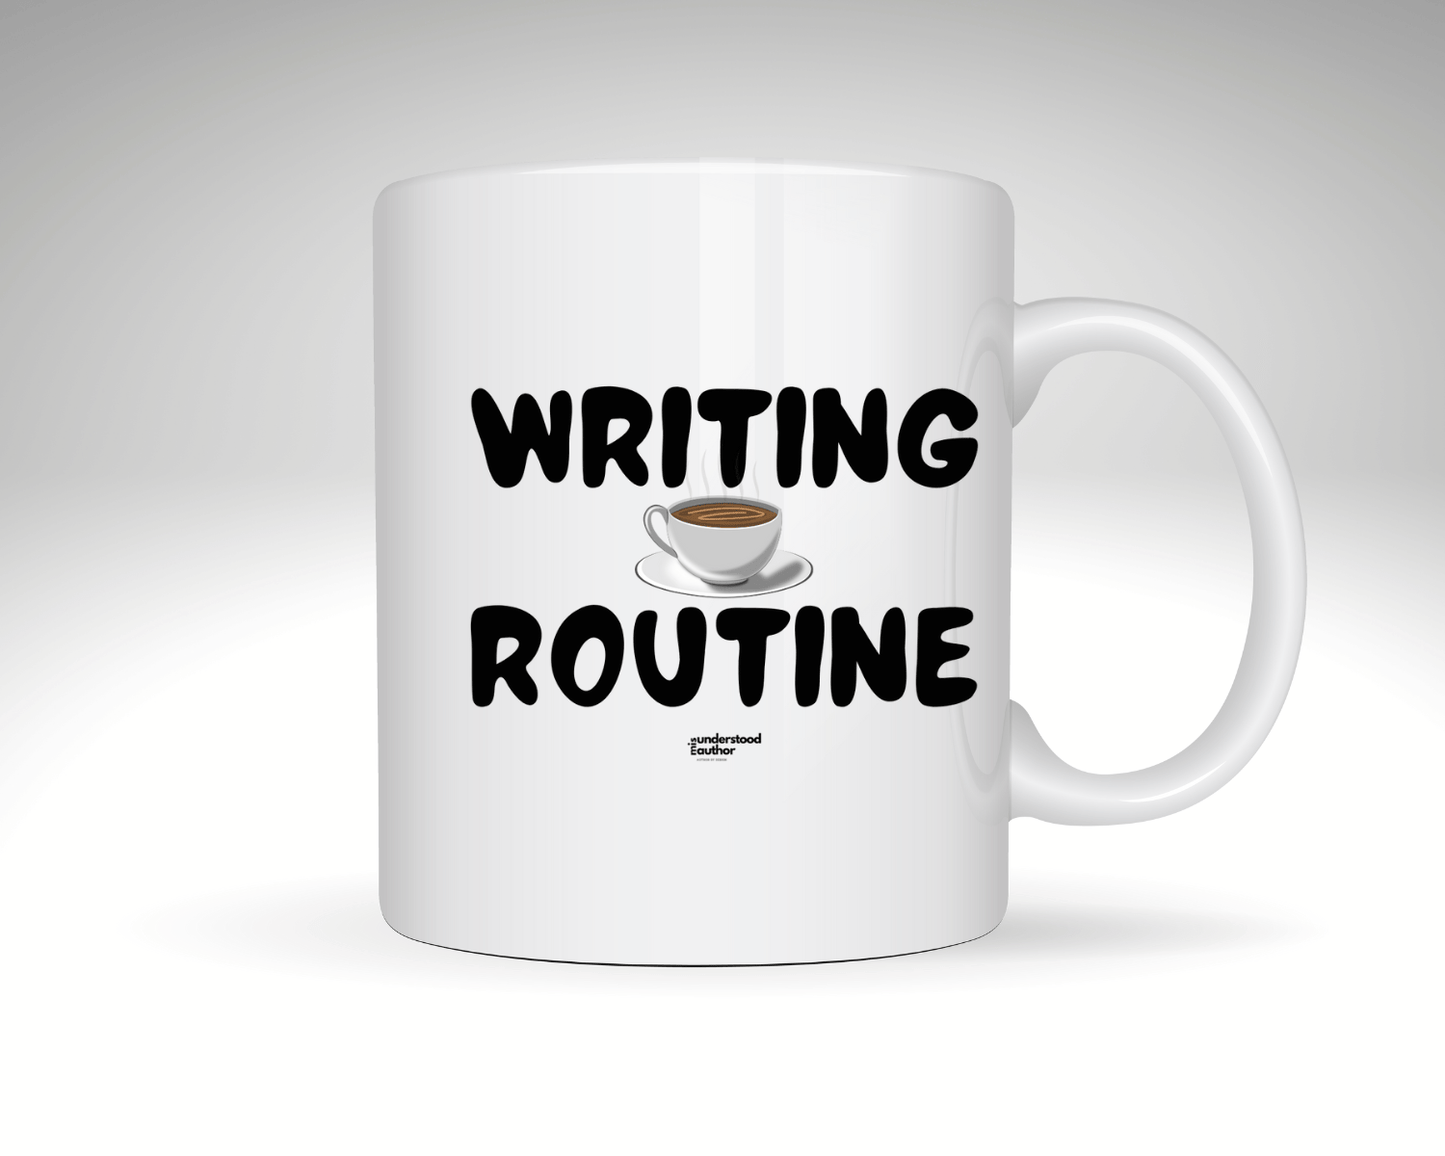 Writing Routine Tumbler or Mug - Writer's Block Box